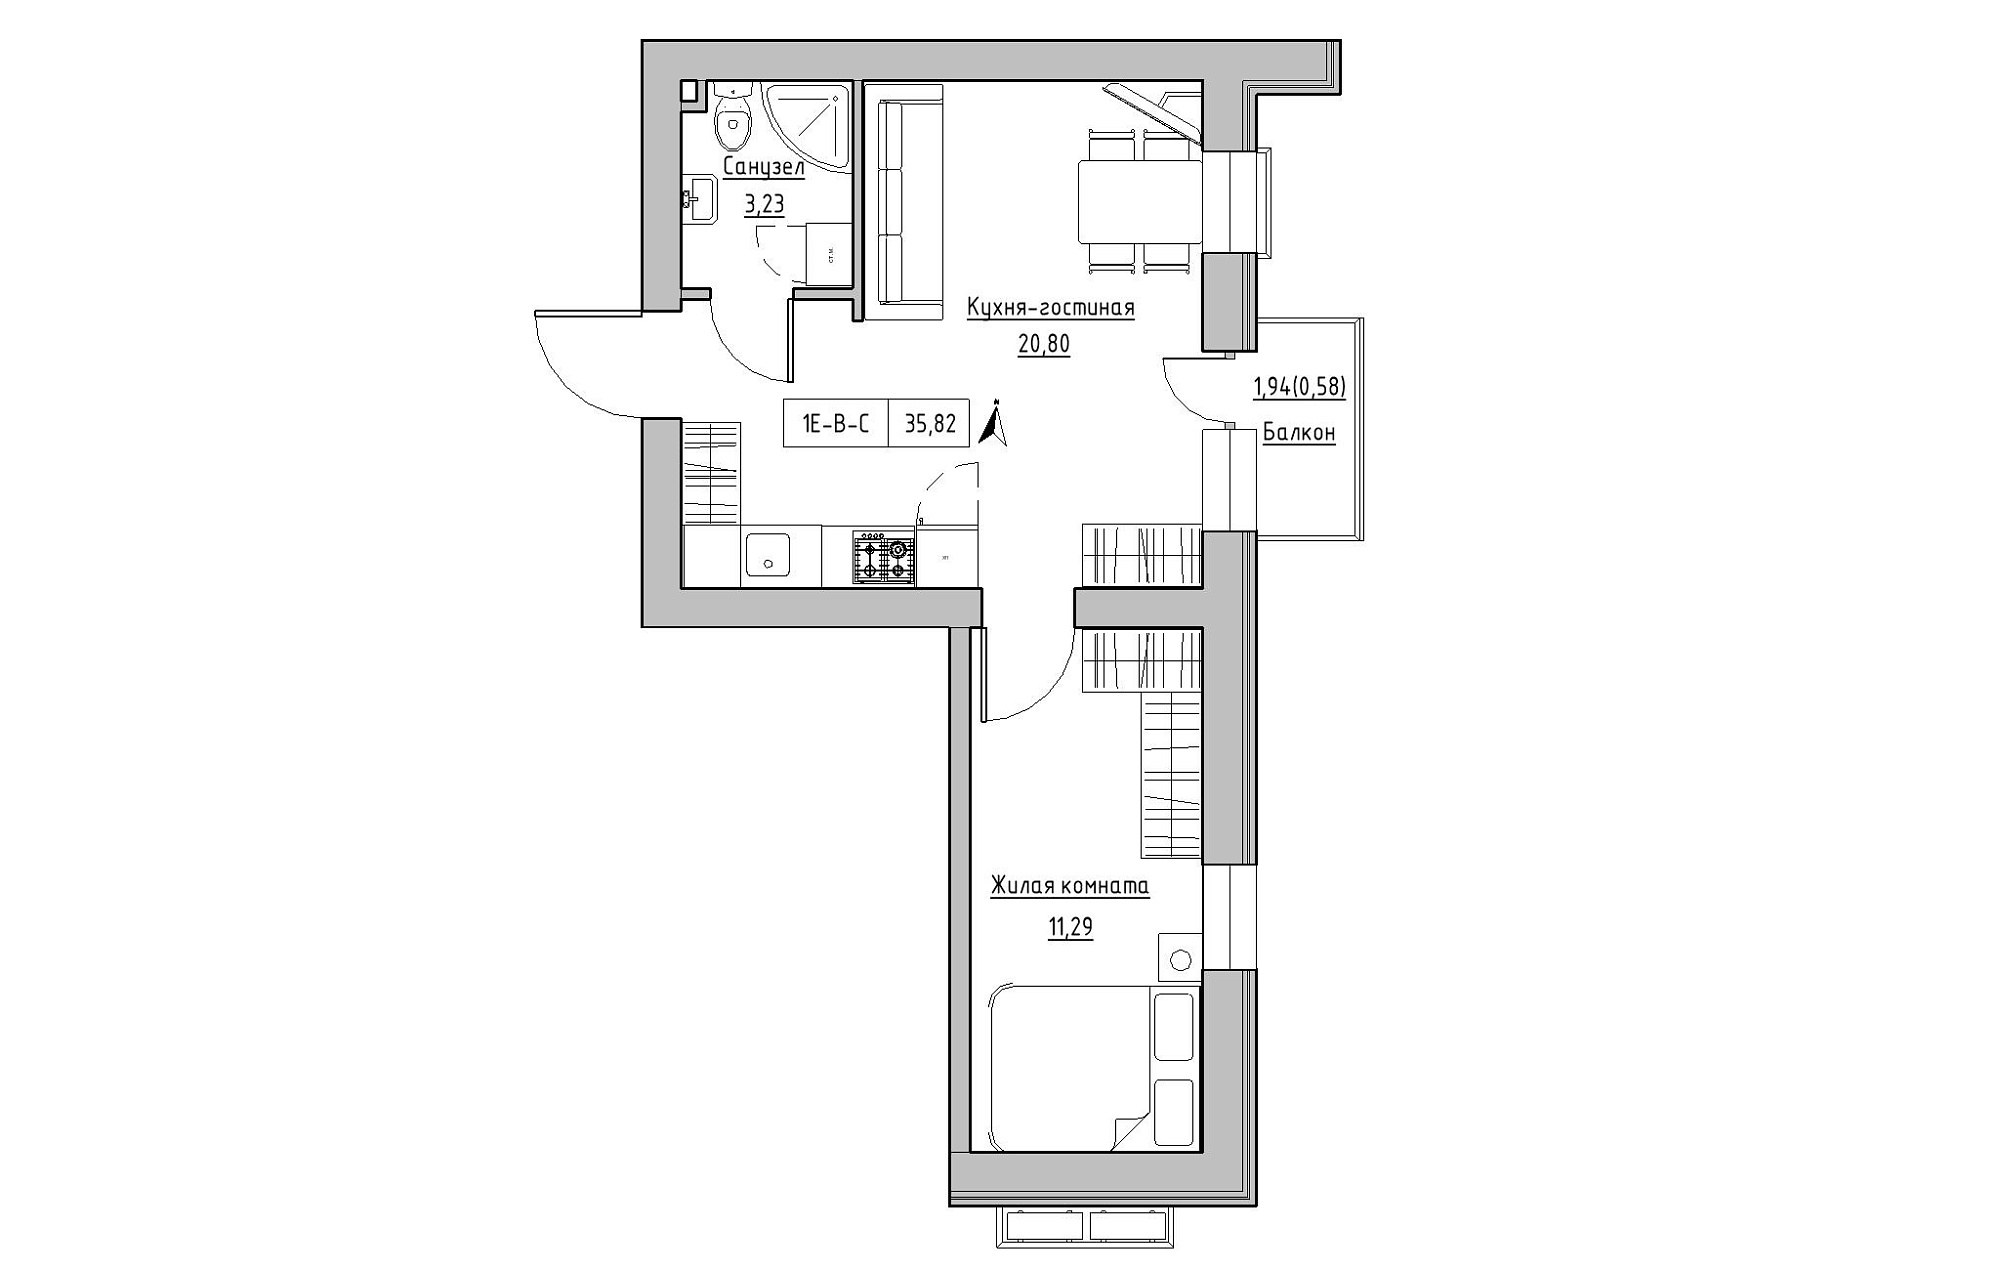 Планировка 1-к квартира площей 35.82м2, KS-019-04/0007.